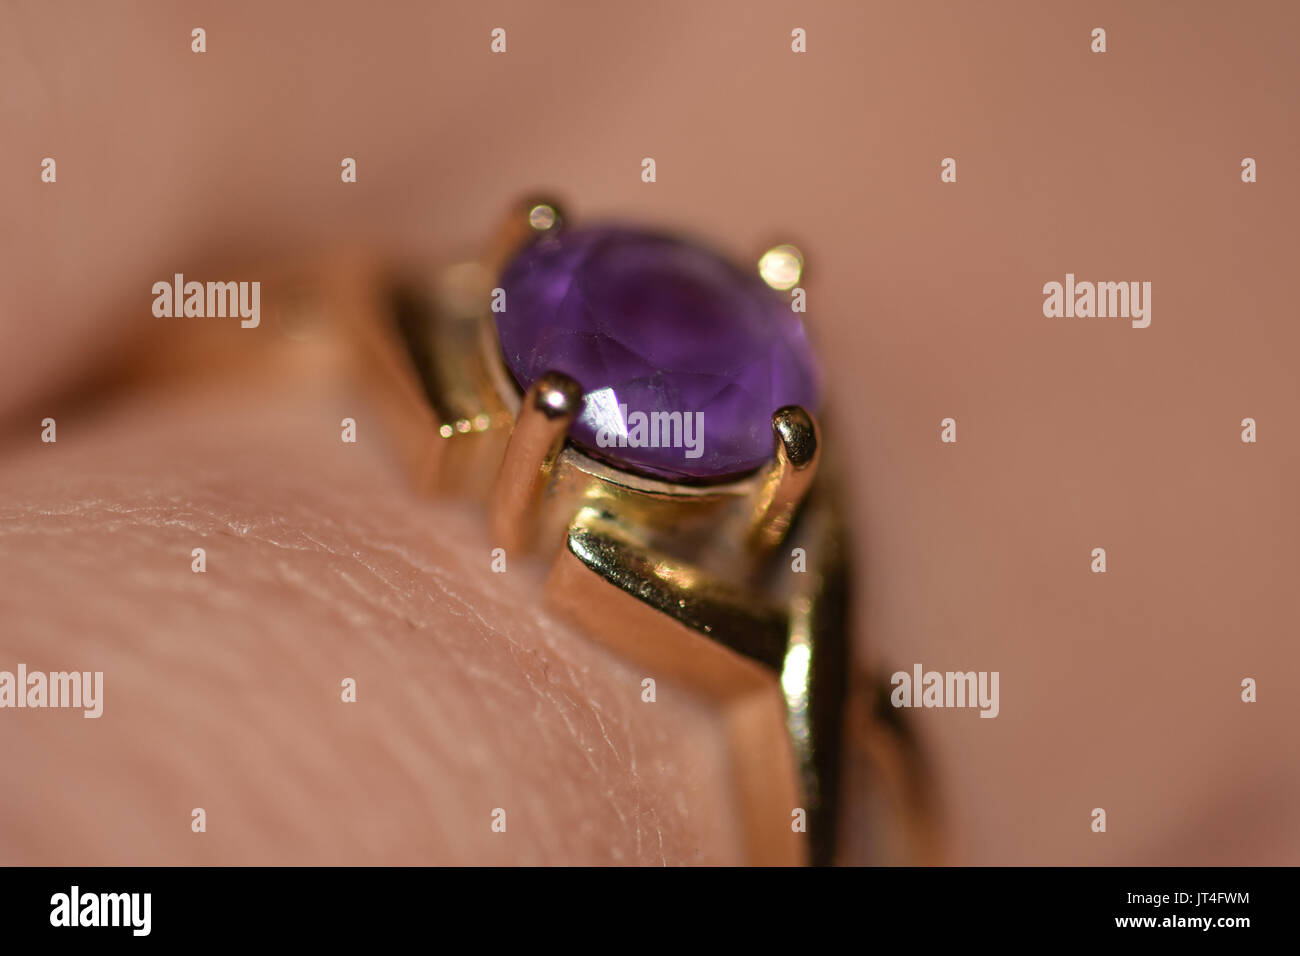 purple gem ring on finger Stock Photo